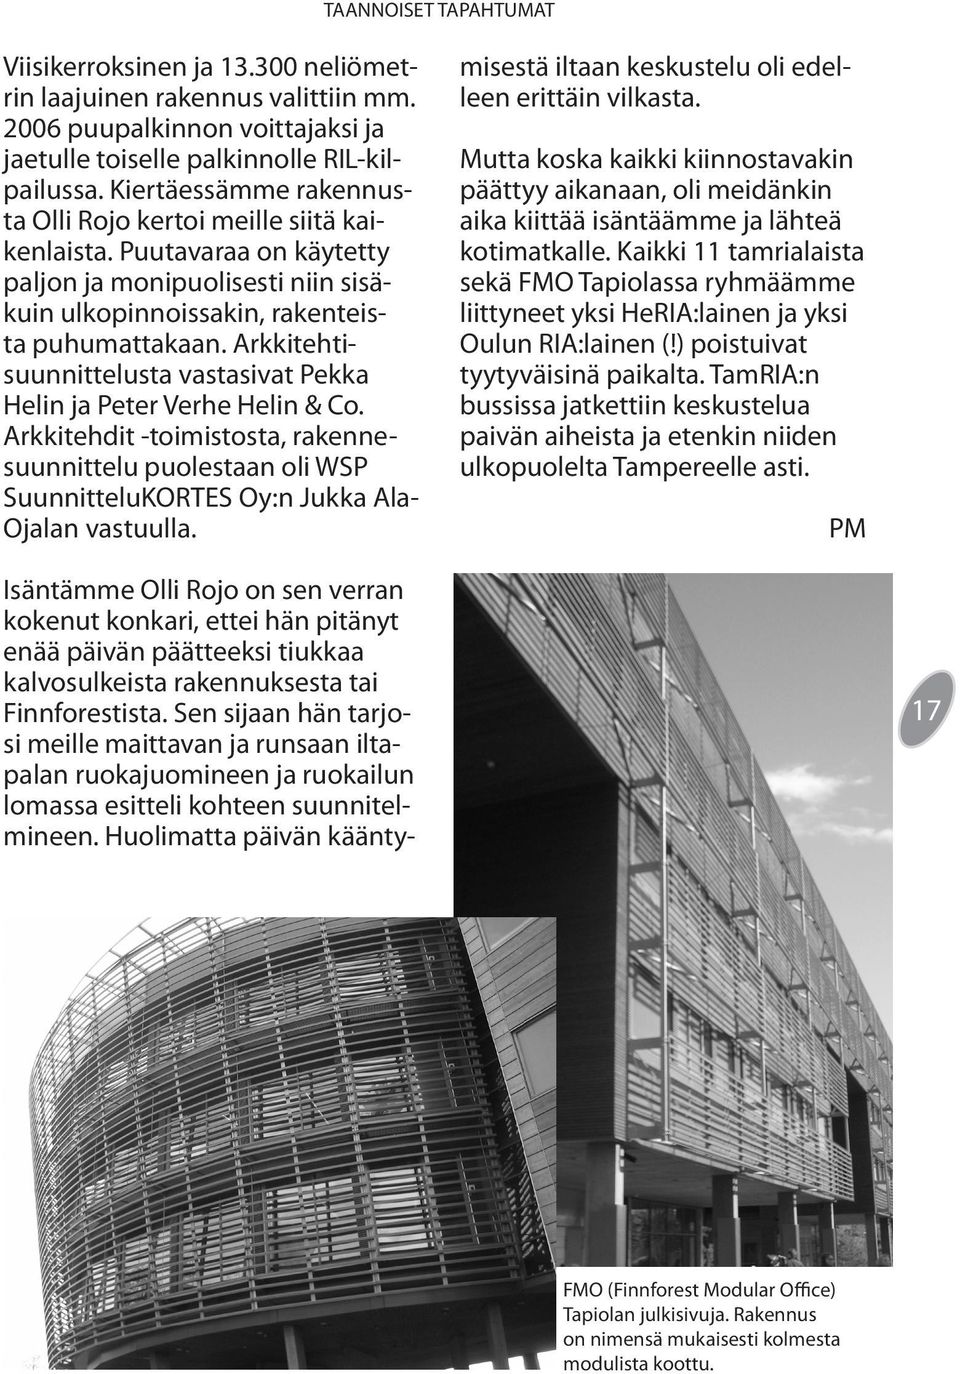 Arkkitehtisuunnittelusta vastasivat Pekka Helin ja Peter Verhe Helin & Co. Arkkitehdit -toimistosta, rakennesuunnittelu puolestaan oli WSP SuunnitteluKORTES Oy:n Jukka Ala- Ojalan vastuulla.